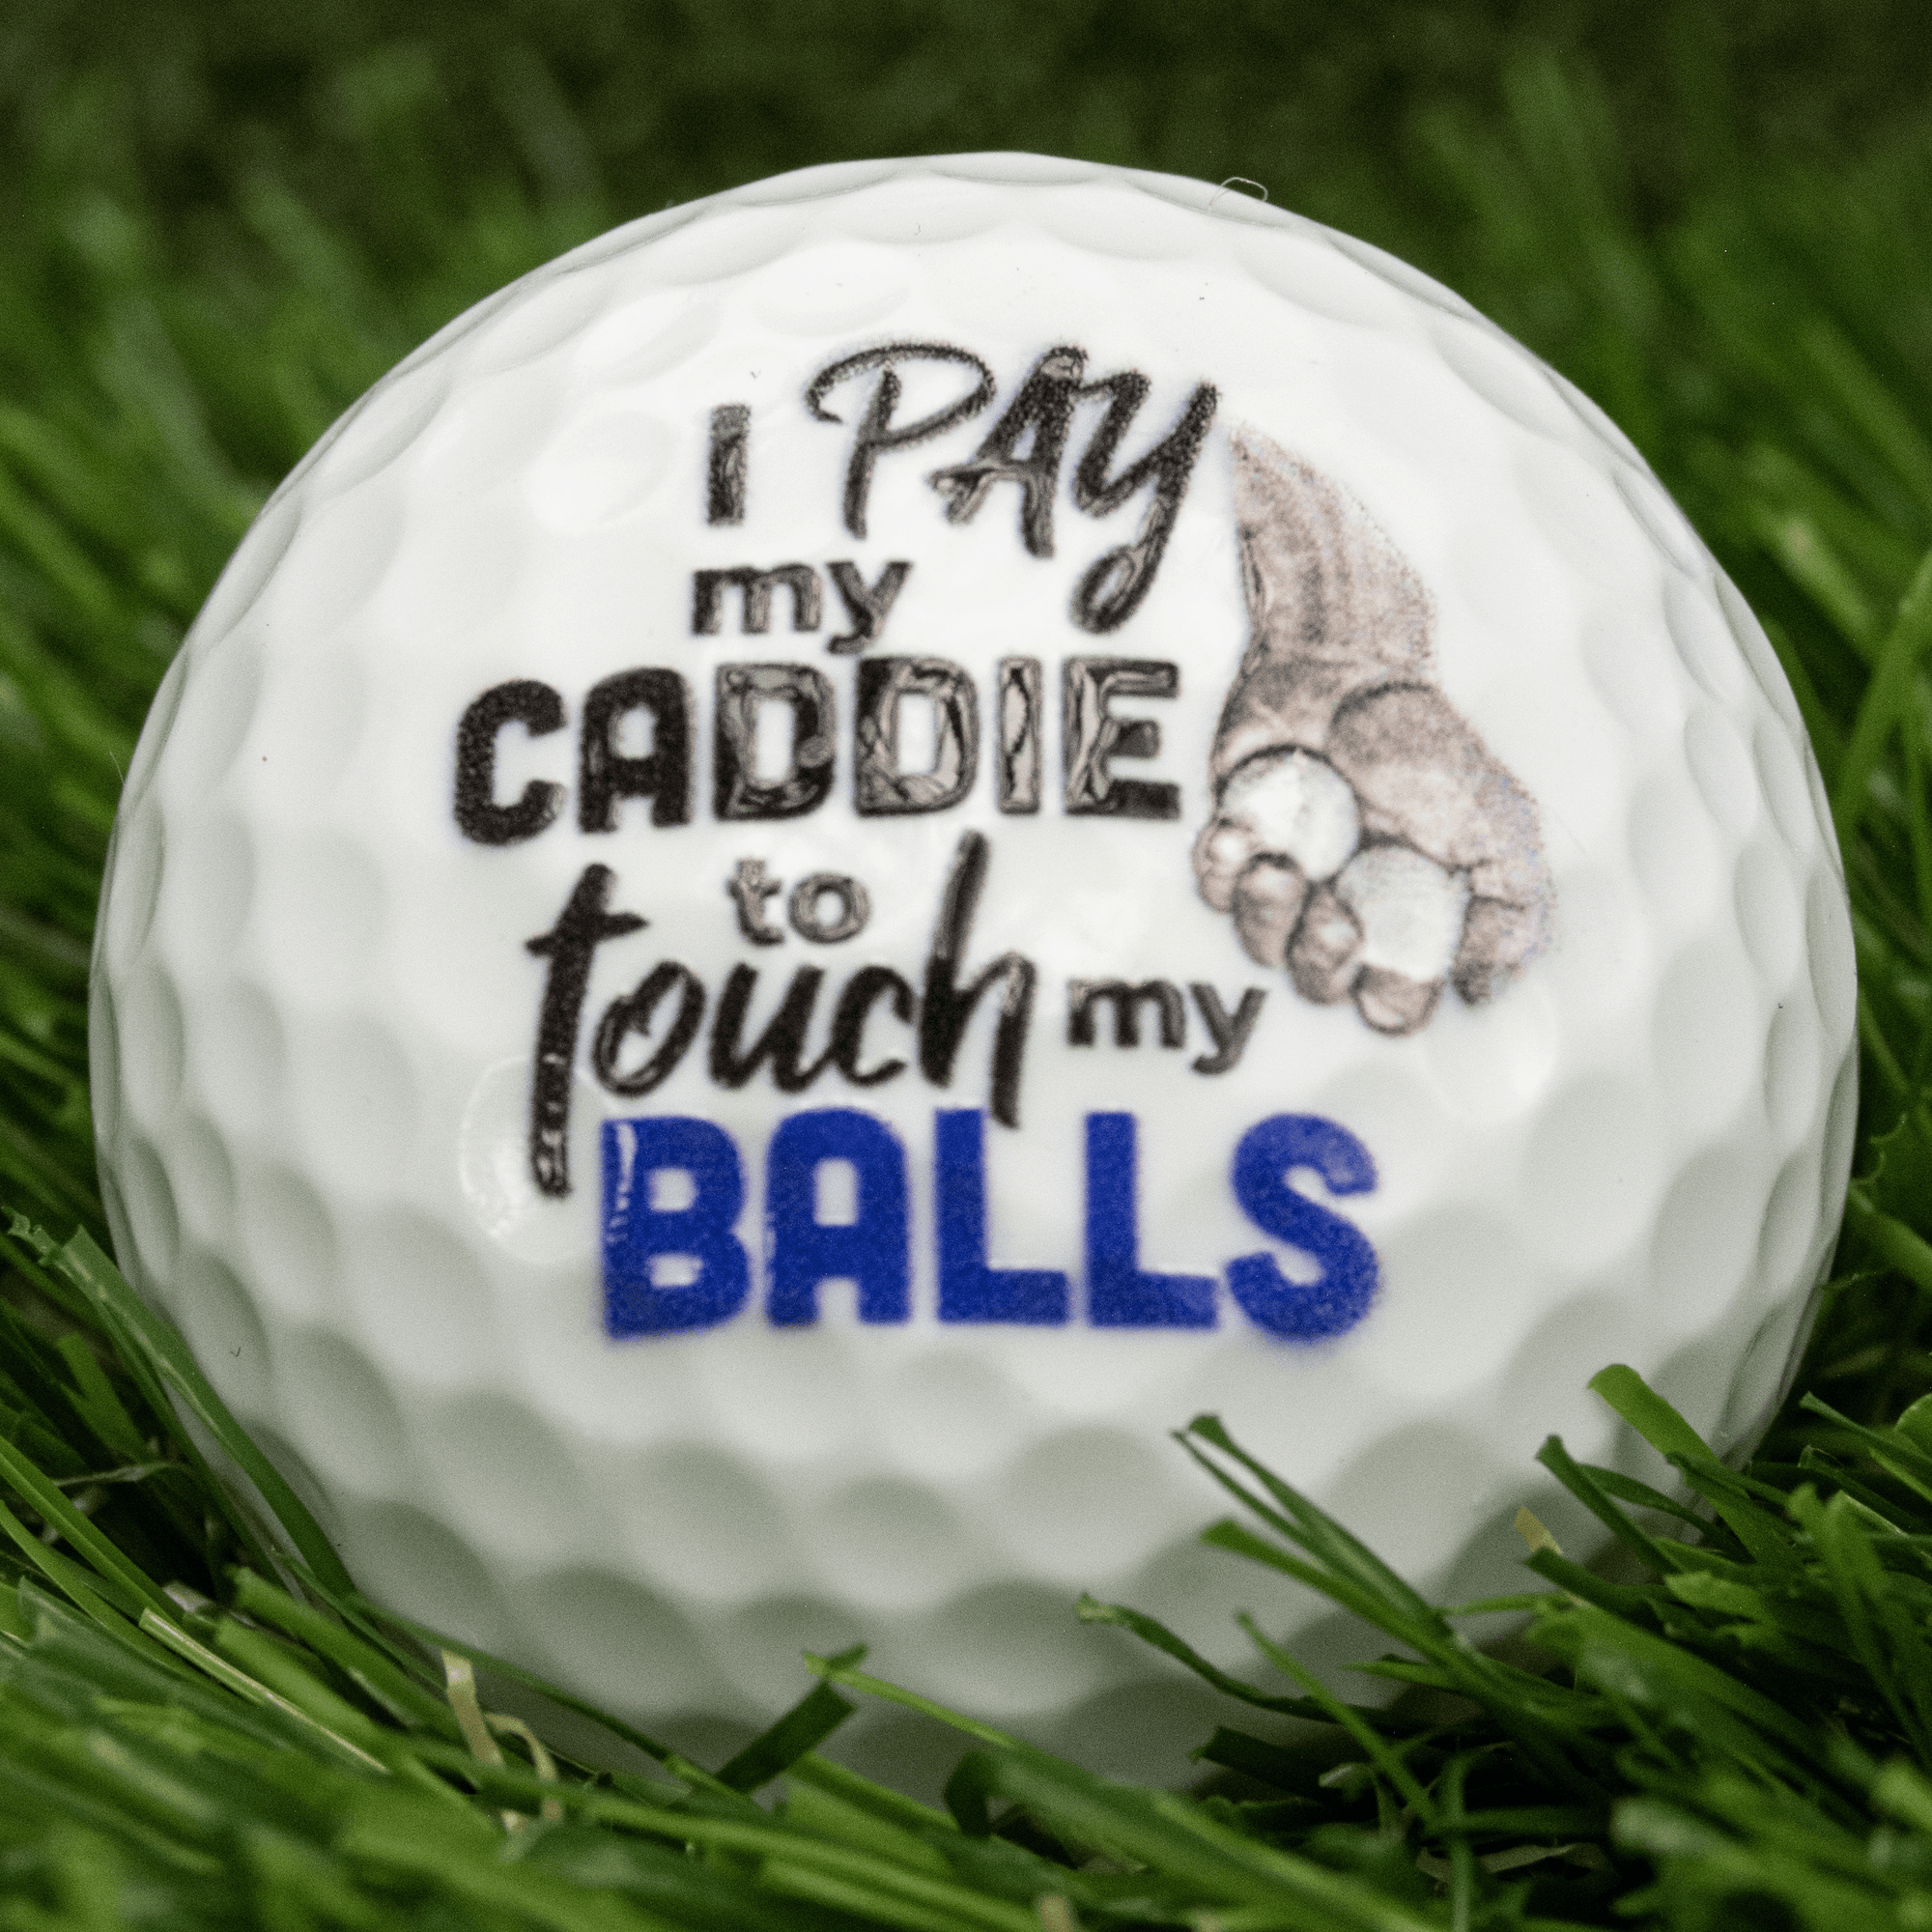 Naughty Balls, Funny Golf Balls, Novelty Golf Balls